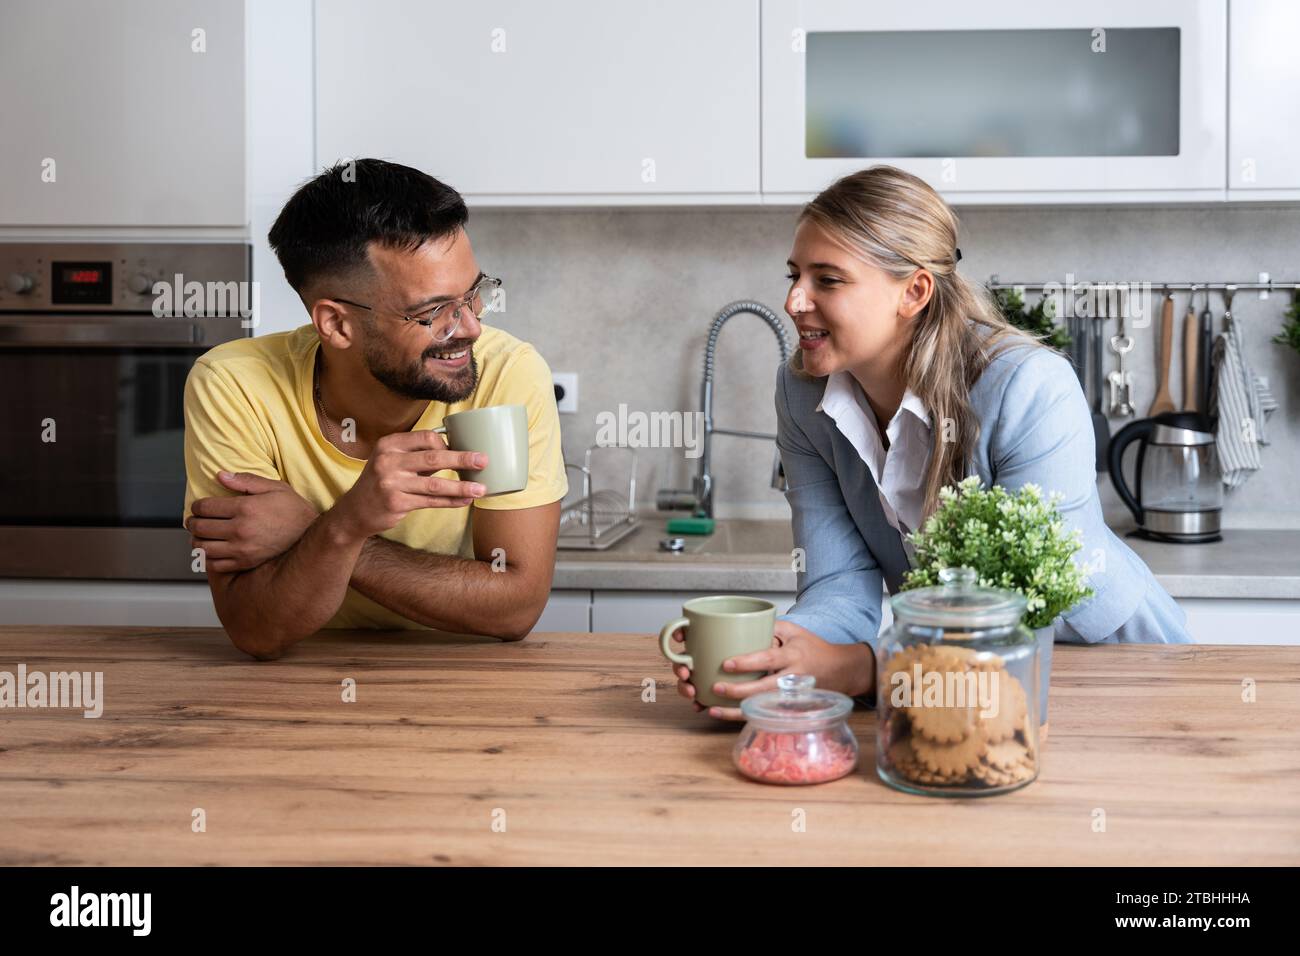 Kleine Gespräche. Mann und Frau stehen in der Küche und plaudern, während sie Kaffee trinken, nachdem die Frau von ihrem Arbeitsplatz nach Hause zurückgekommen ist. Businesswom Stockfoto